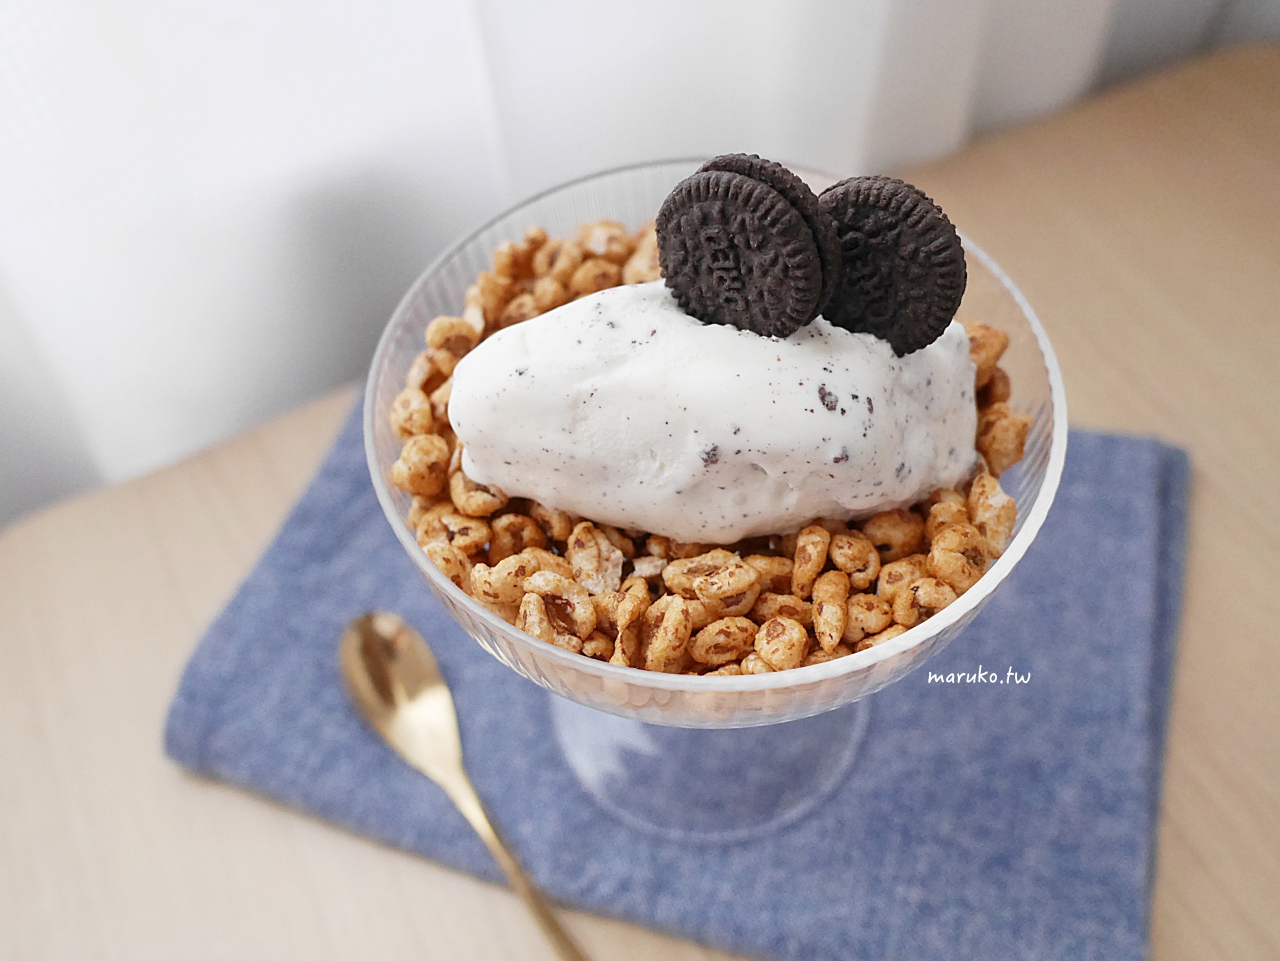 【食譜】OREO冰淇淋 5分鐘就能完成的簡單DIY甜點